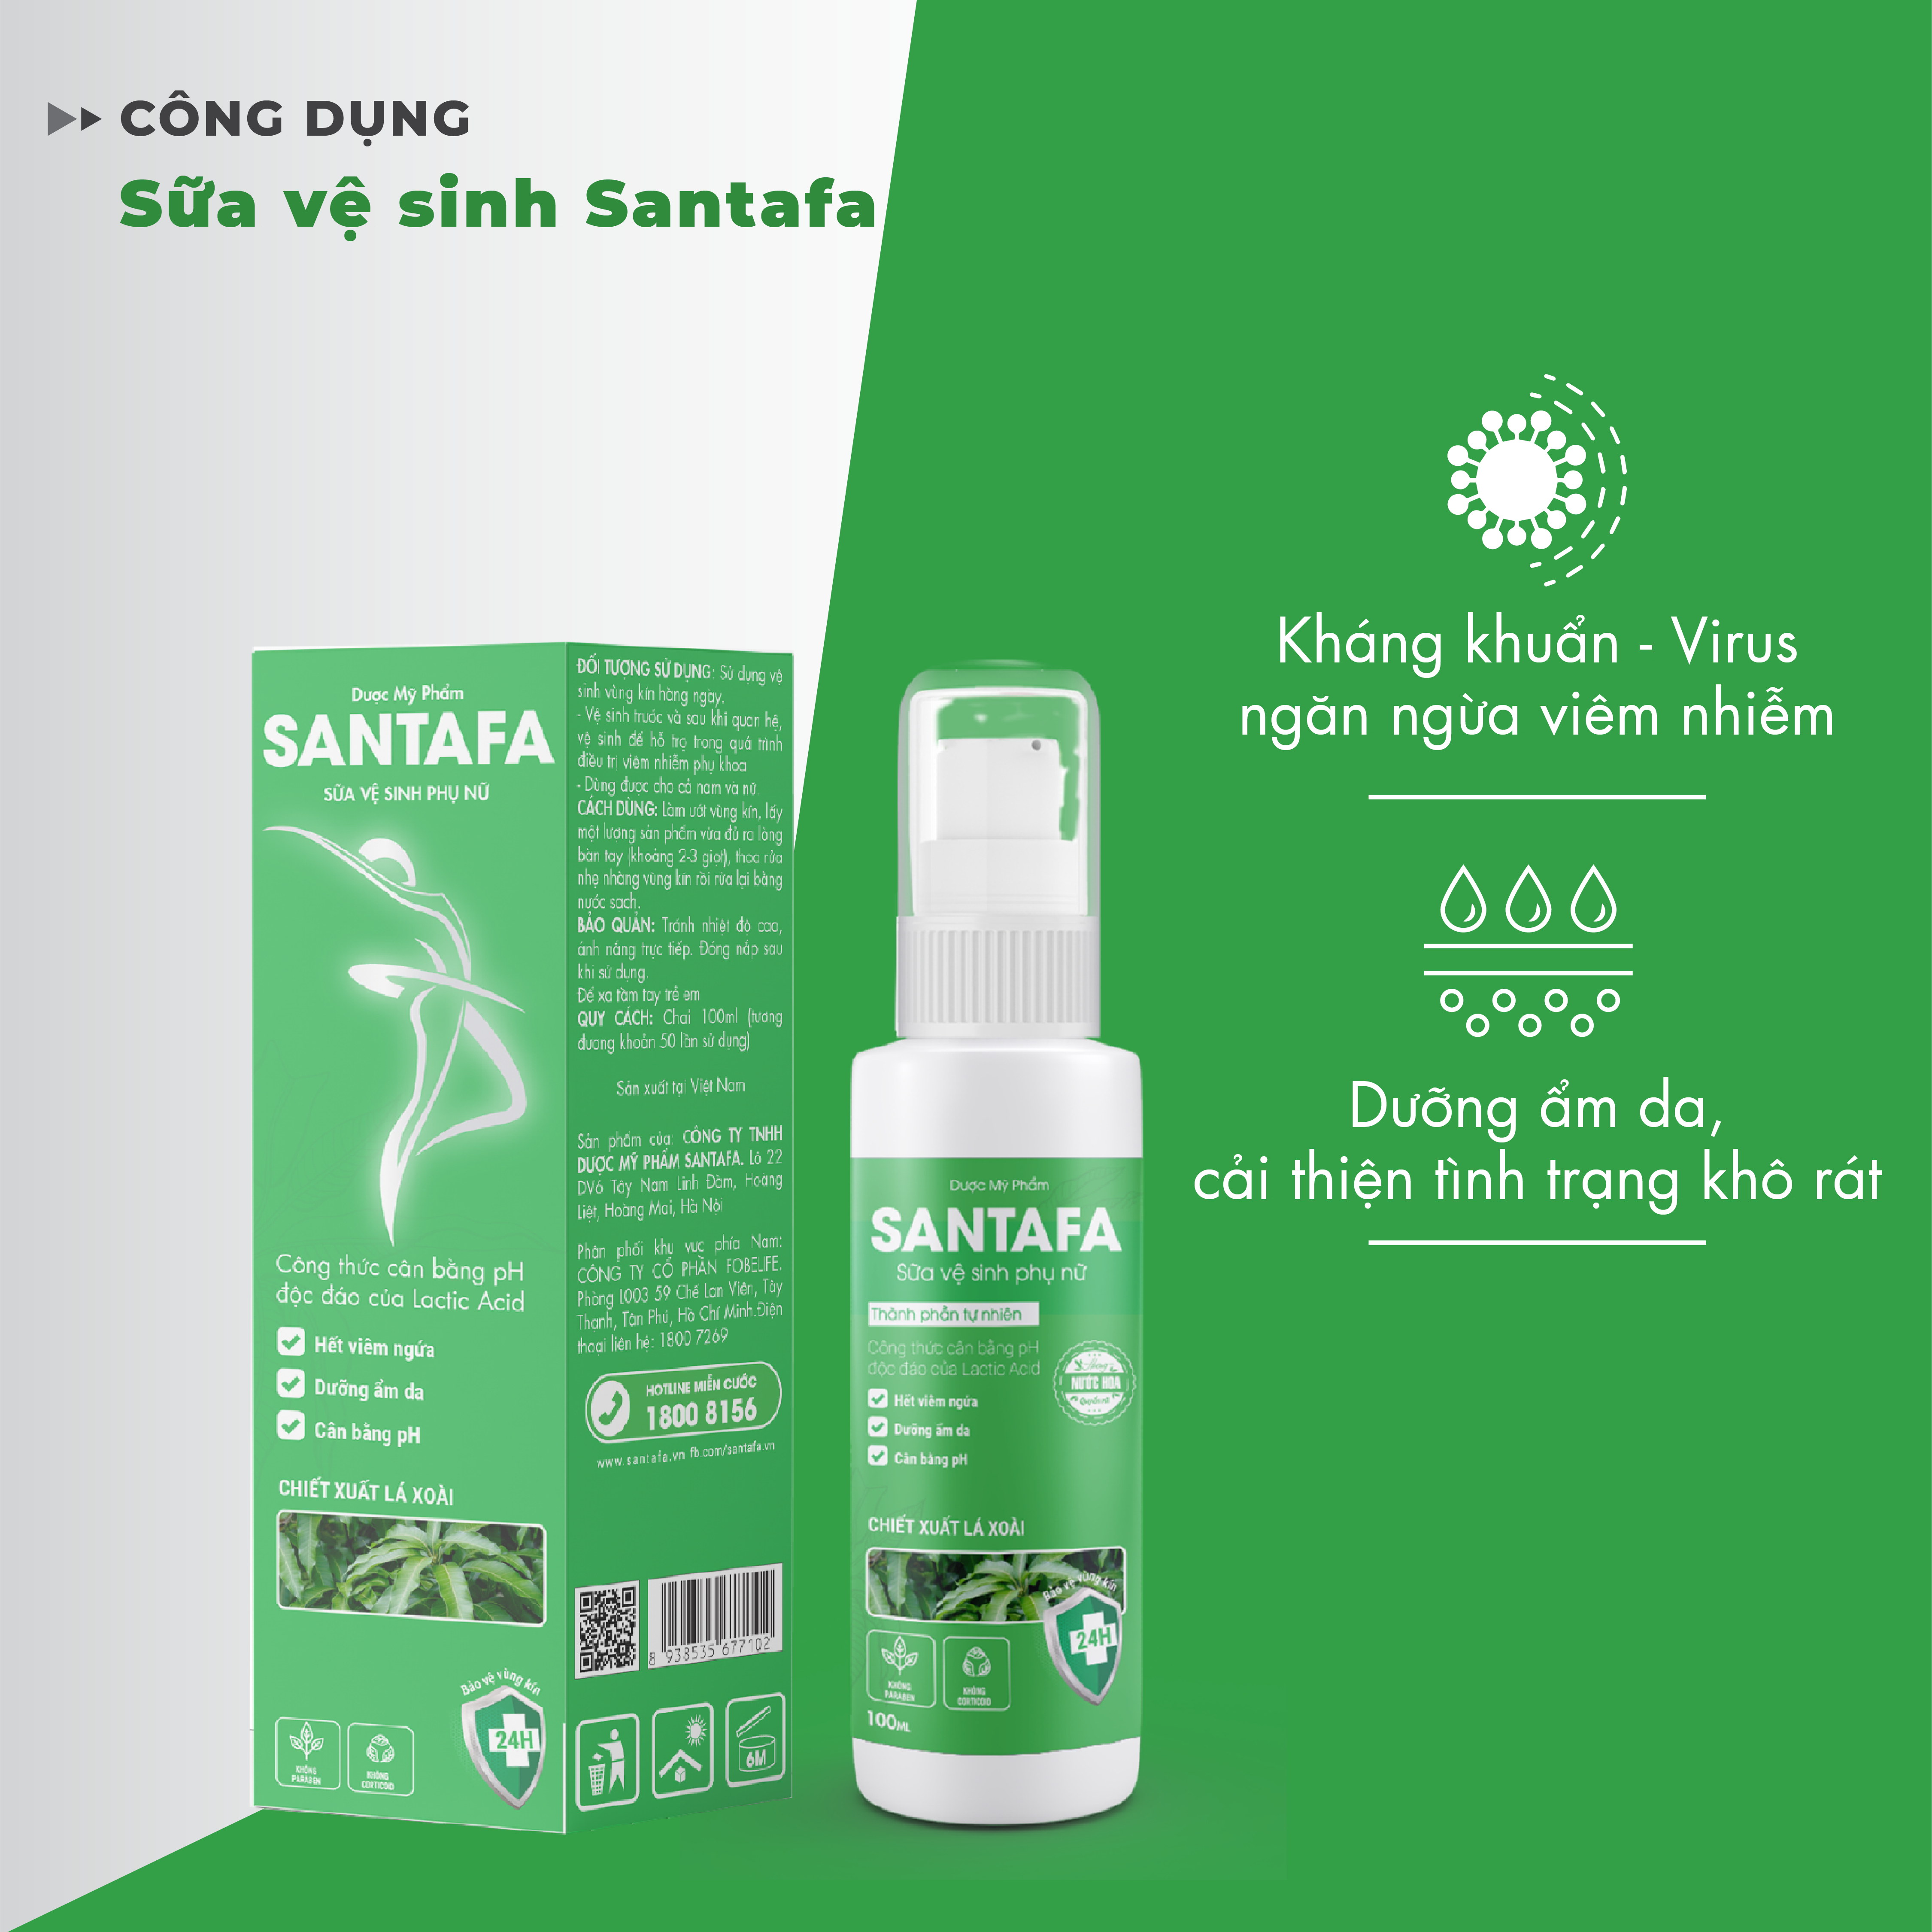 Sữa vệ sinh phụ nữ Santafa Làm sạch nhẹ nhàng, kháng khuẩn, chăm sóc và bảo vệ, đem lại cảm giác tự tin, thoải mái với hương nước hoa Chai 100ml